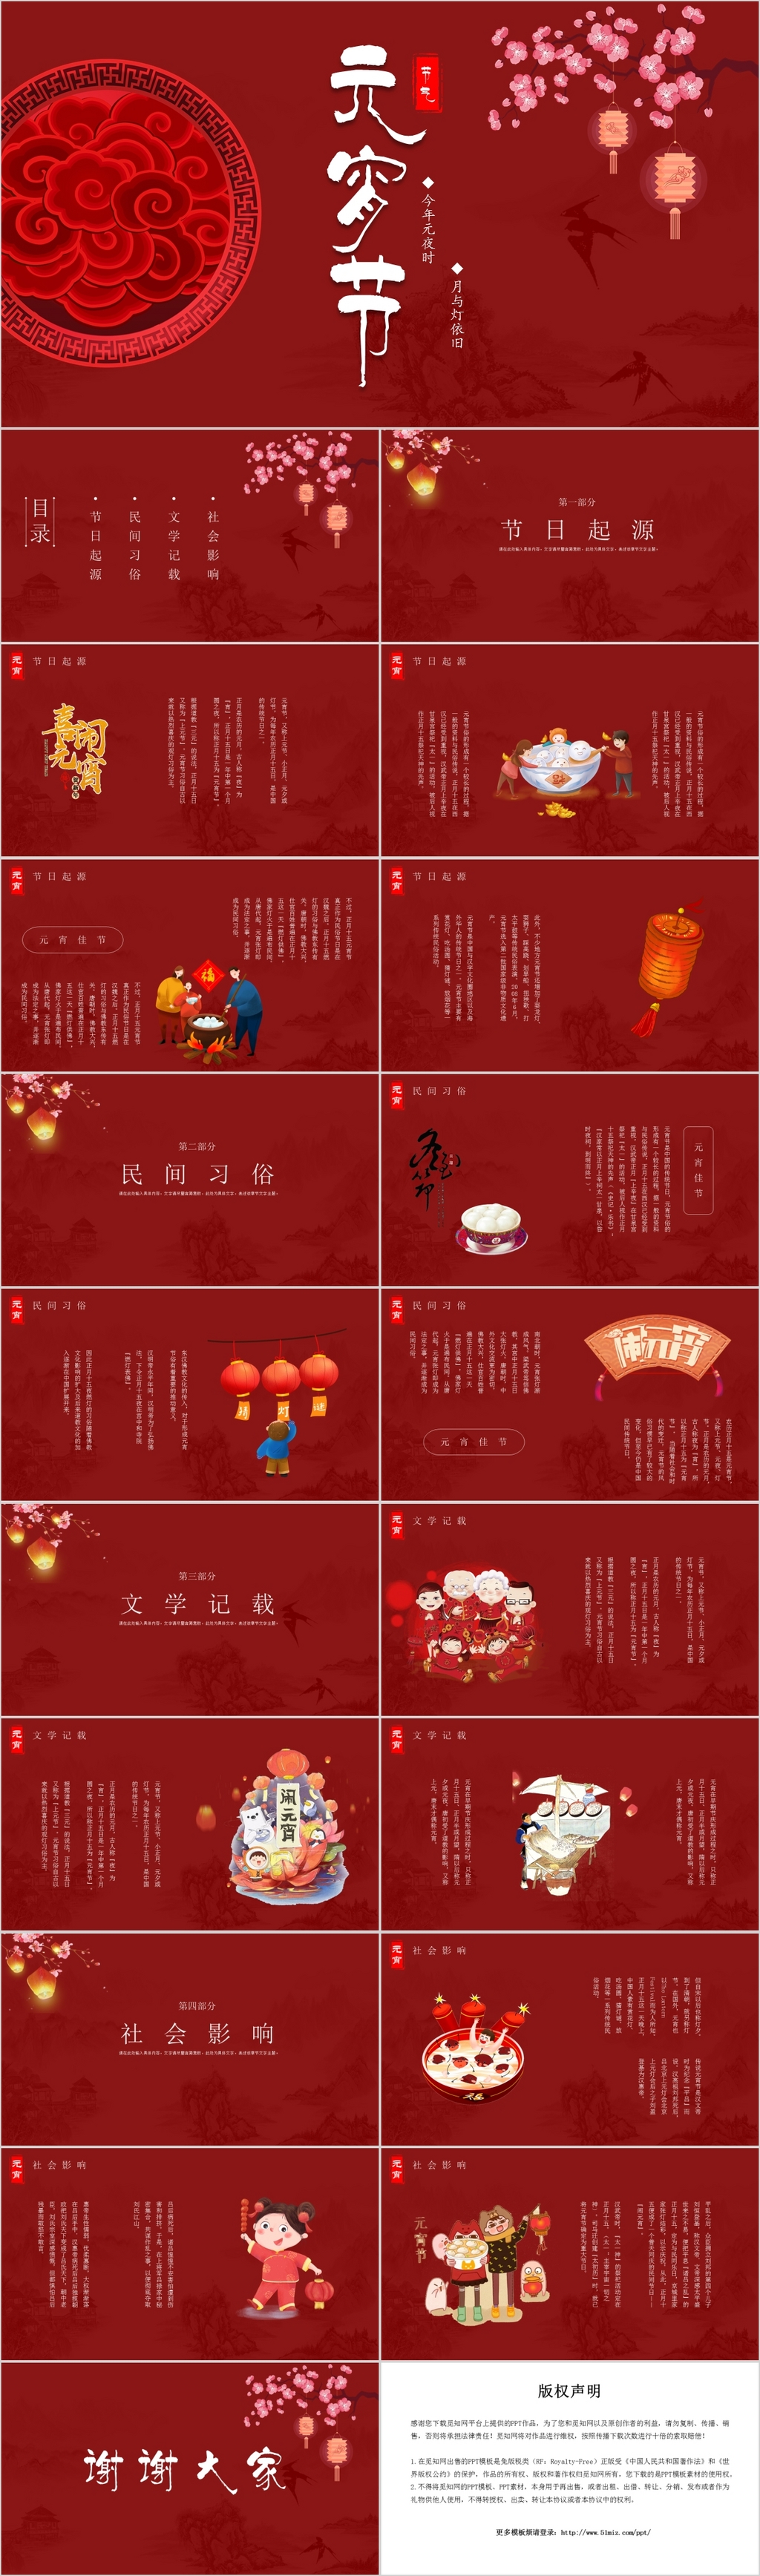 红色中国风传统节日元宵节节日介绍PPT模板2020元宵节